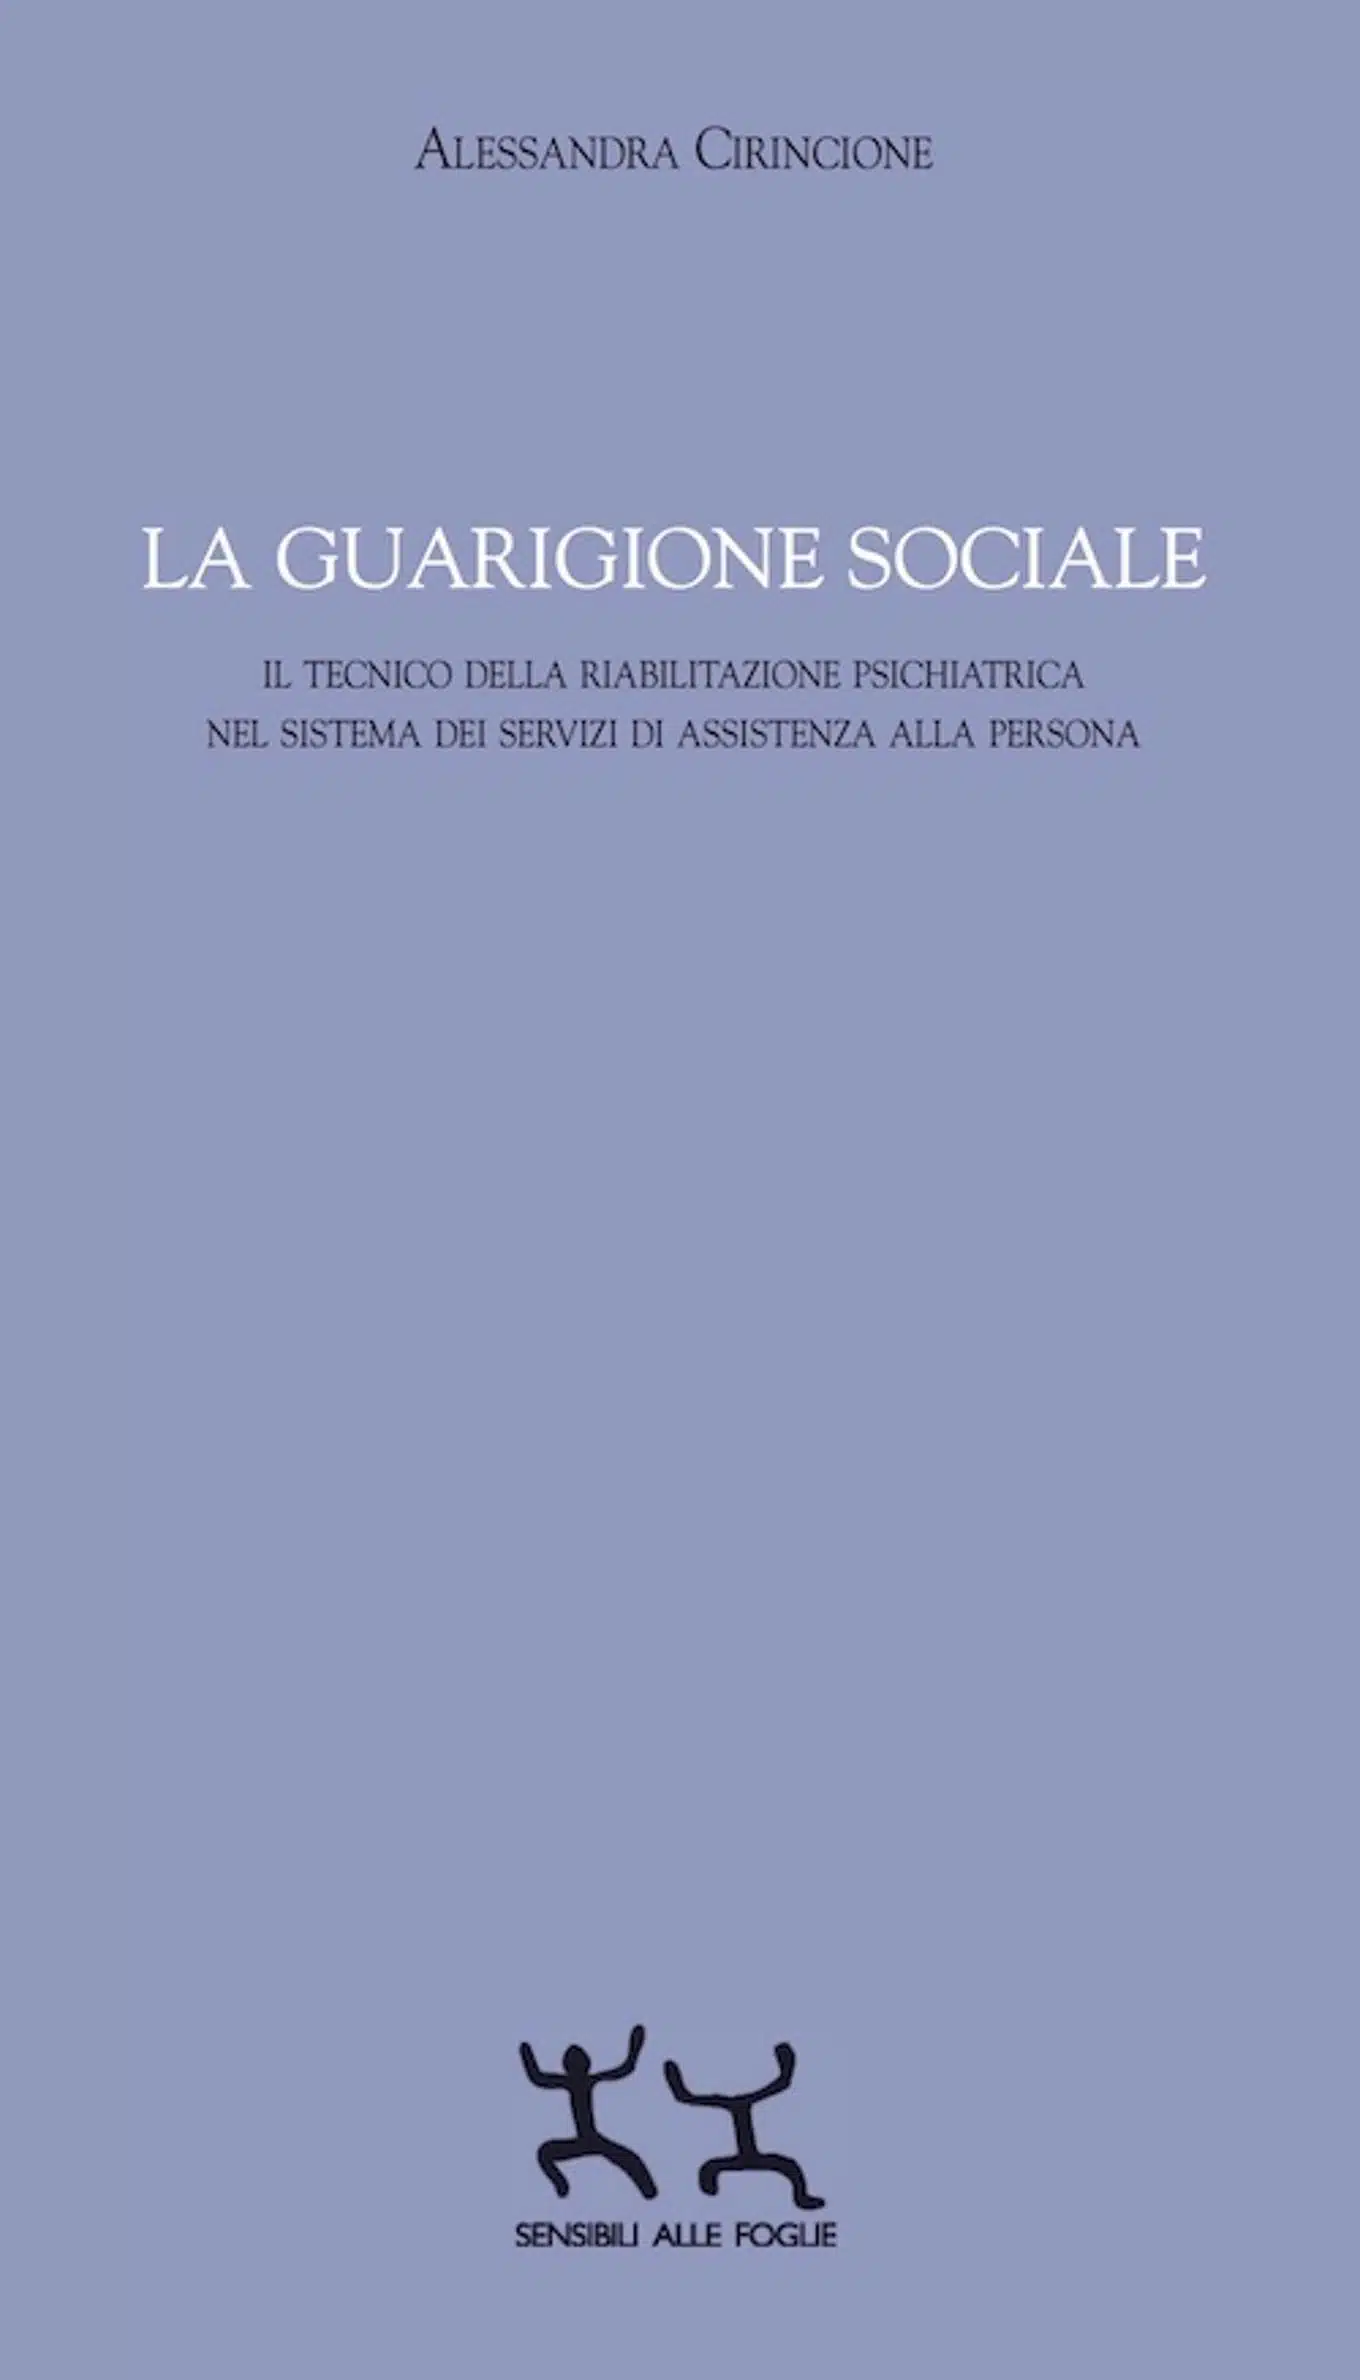 La guarigione sociale (2017) di A. Cirincione - Recensione del libro